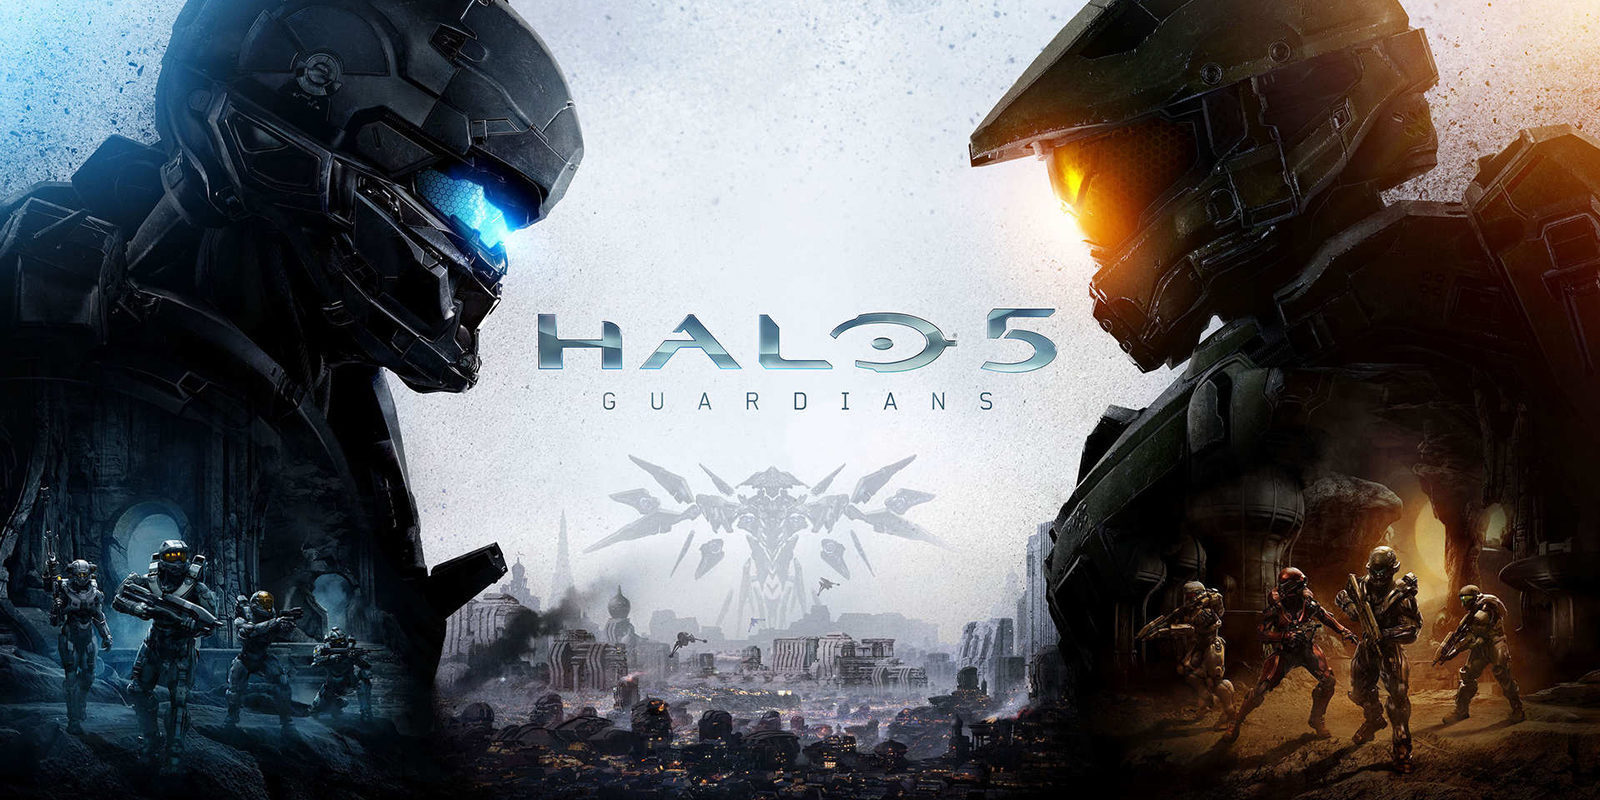 Michael Patcher alaba el trabajo de 343 industries con 'Halo 5: Guardians'